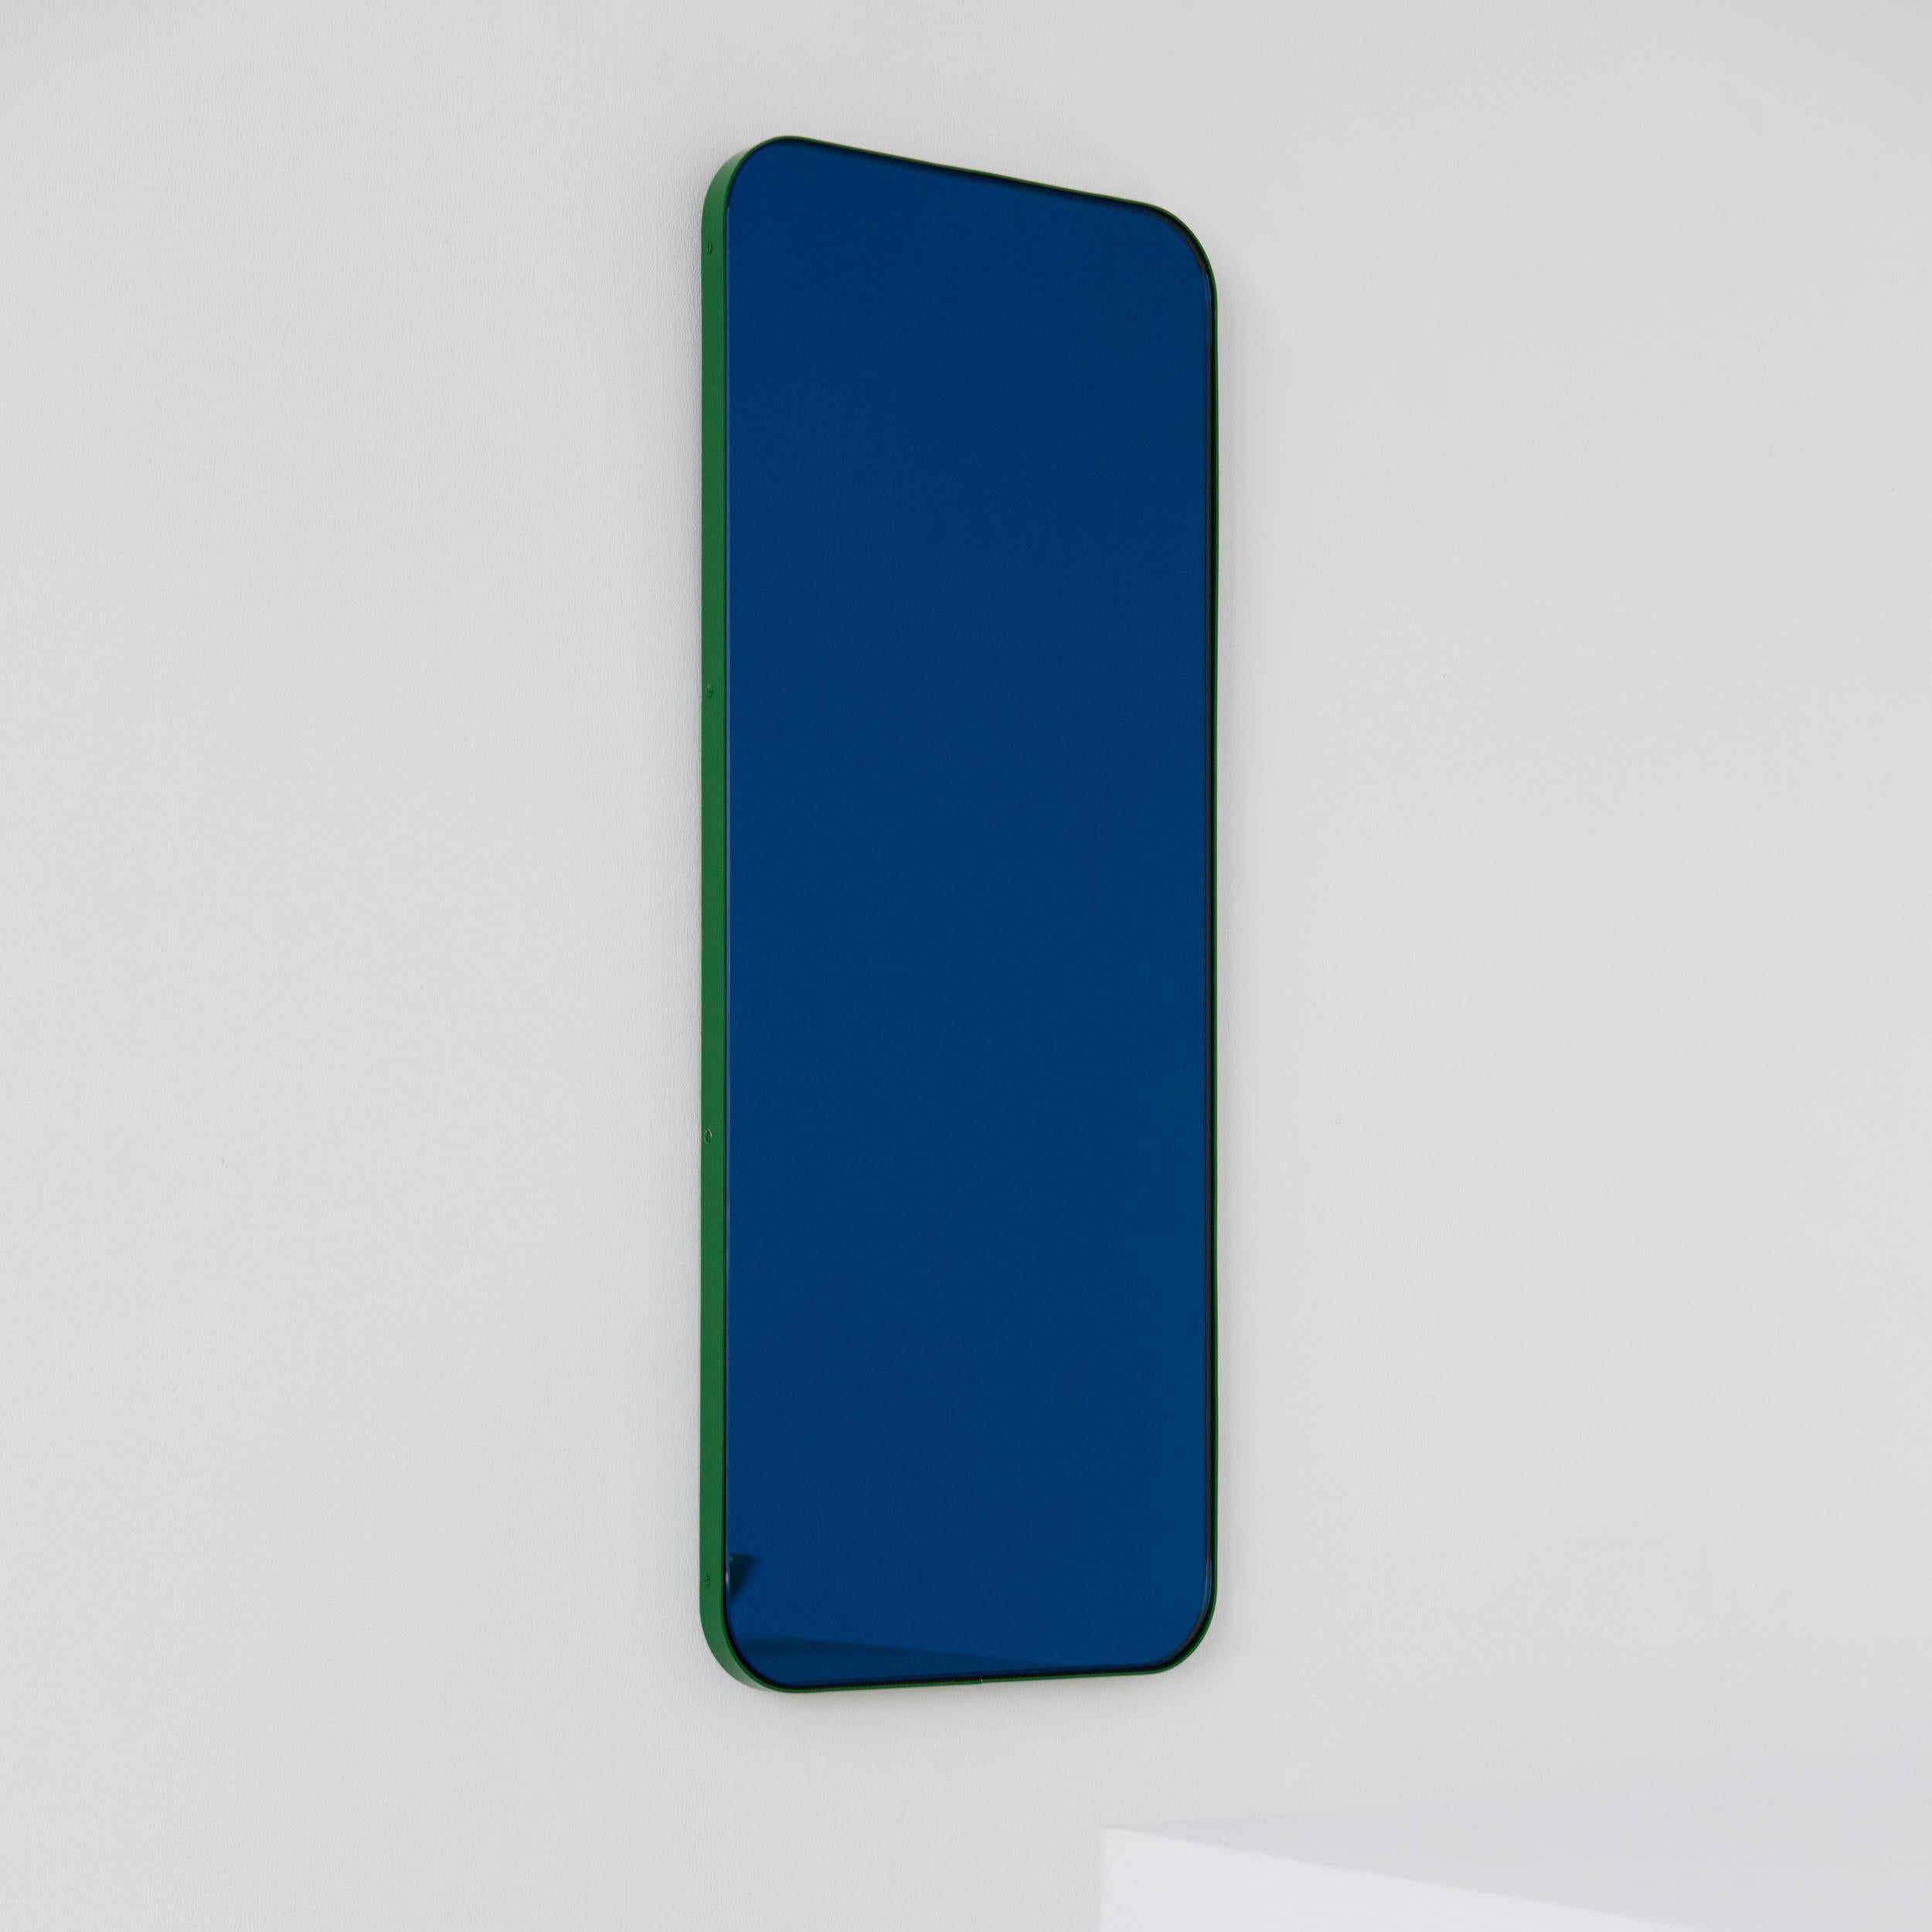 Moderner rechteckiger, blau getönter Spiegel mit elegantem grünen Rahmen. Teil der charmanten Quadris Kollektion, entworfen und handgefertigt in London, UK. 

Die Lieferung erfolgt mit einer speziellen Z-Stange für eine einfache Installation. Auf